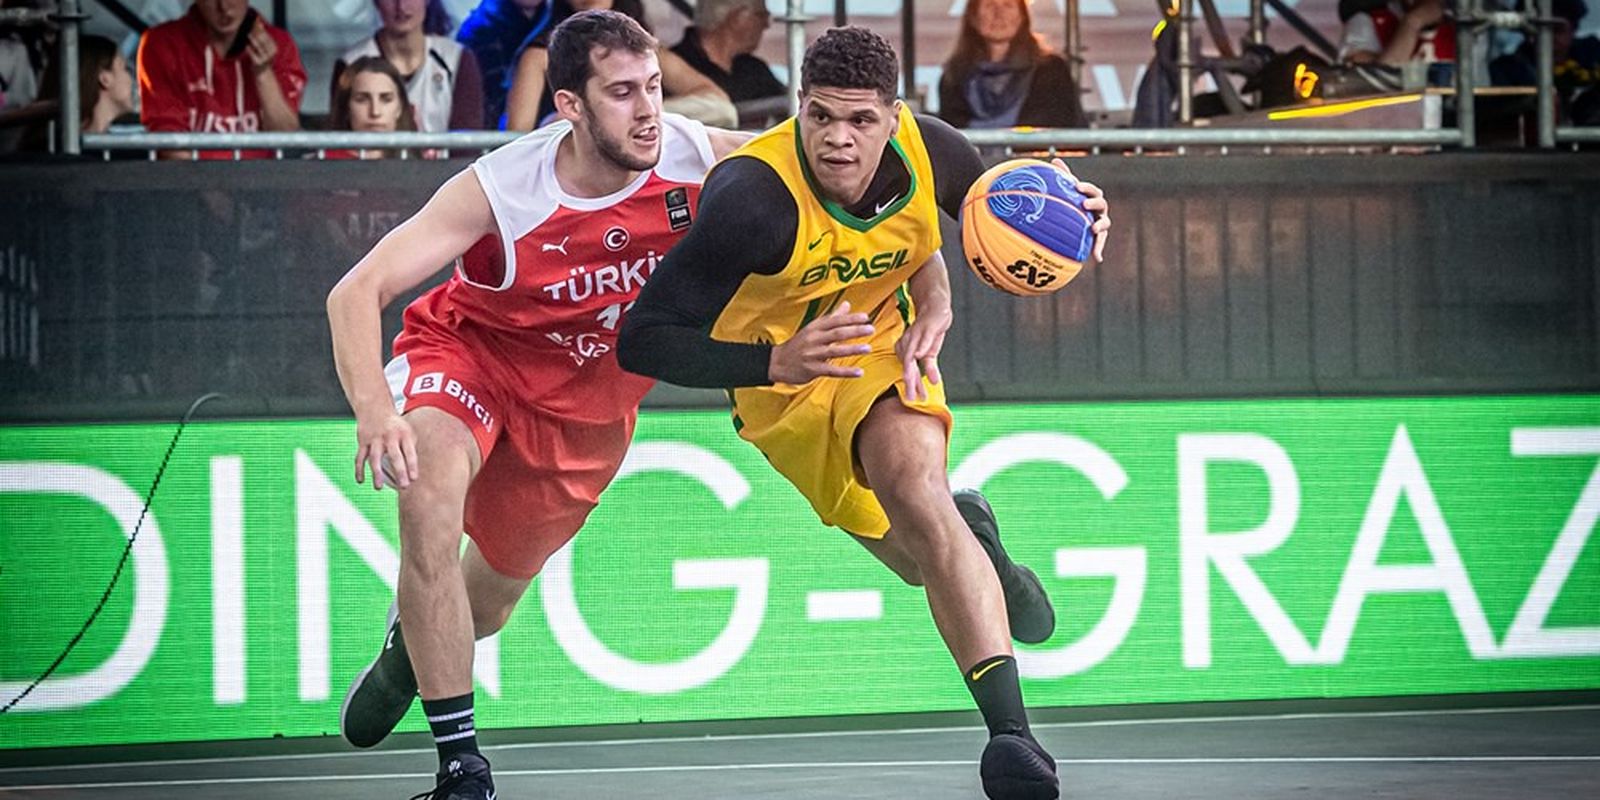 basquete 3x3 - seleção brasileira masculina